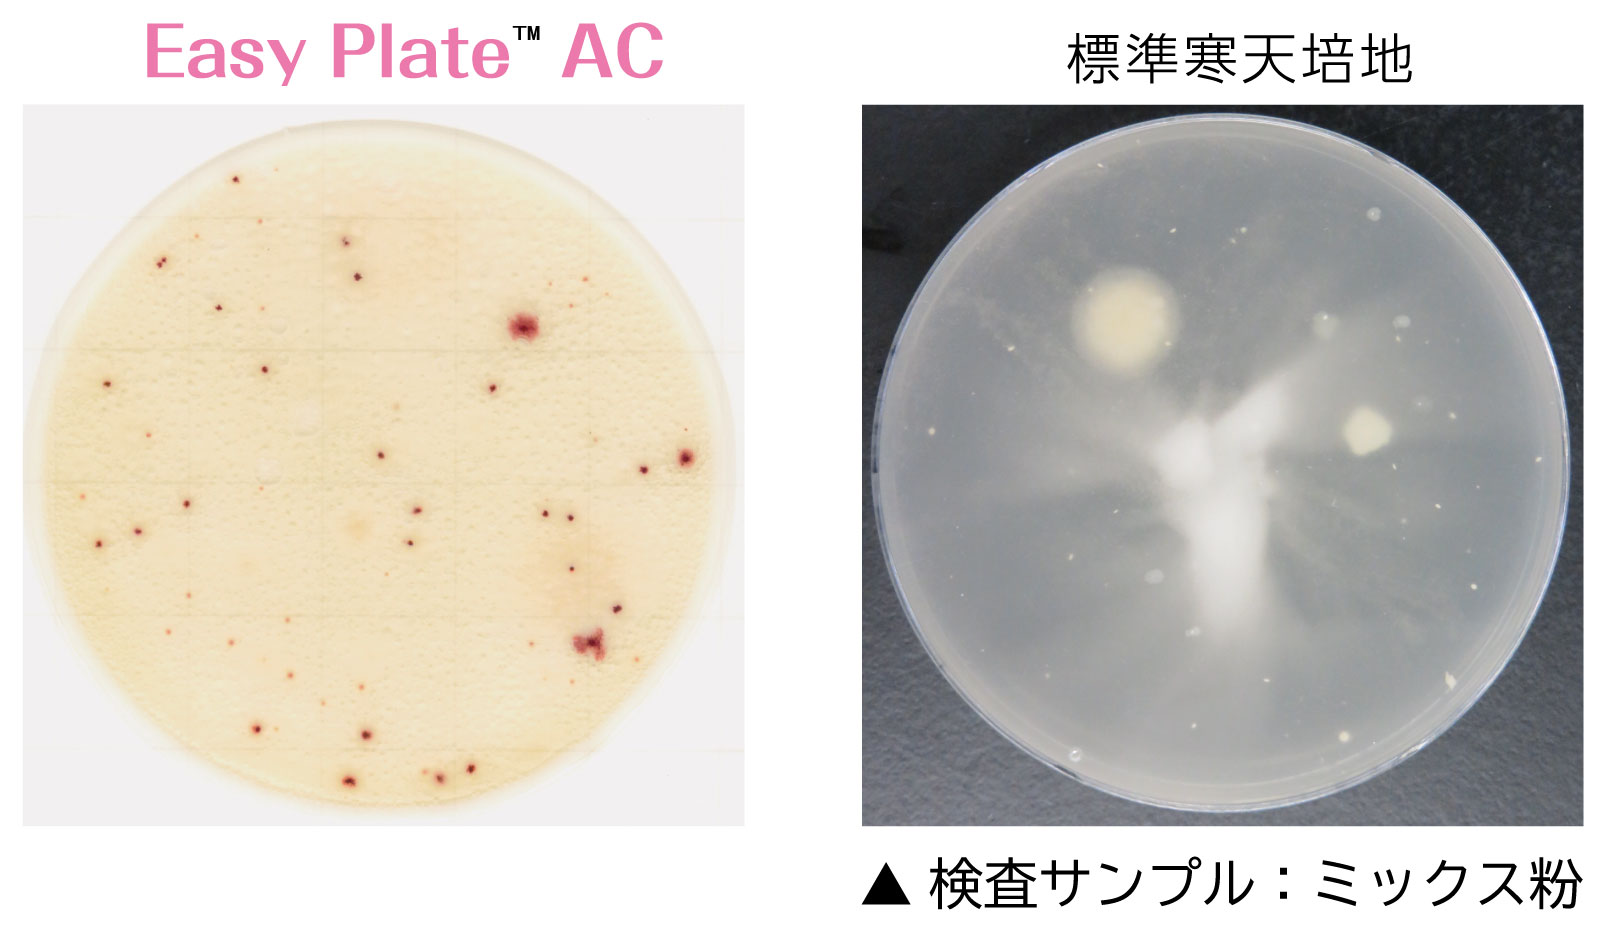 一般生菌数測定用 Easy Plate Ac 微生物検査用フィルム培地 Easy Plate 検査キット キッコーマンバイオケミファ